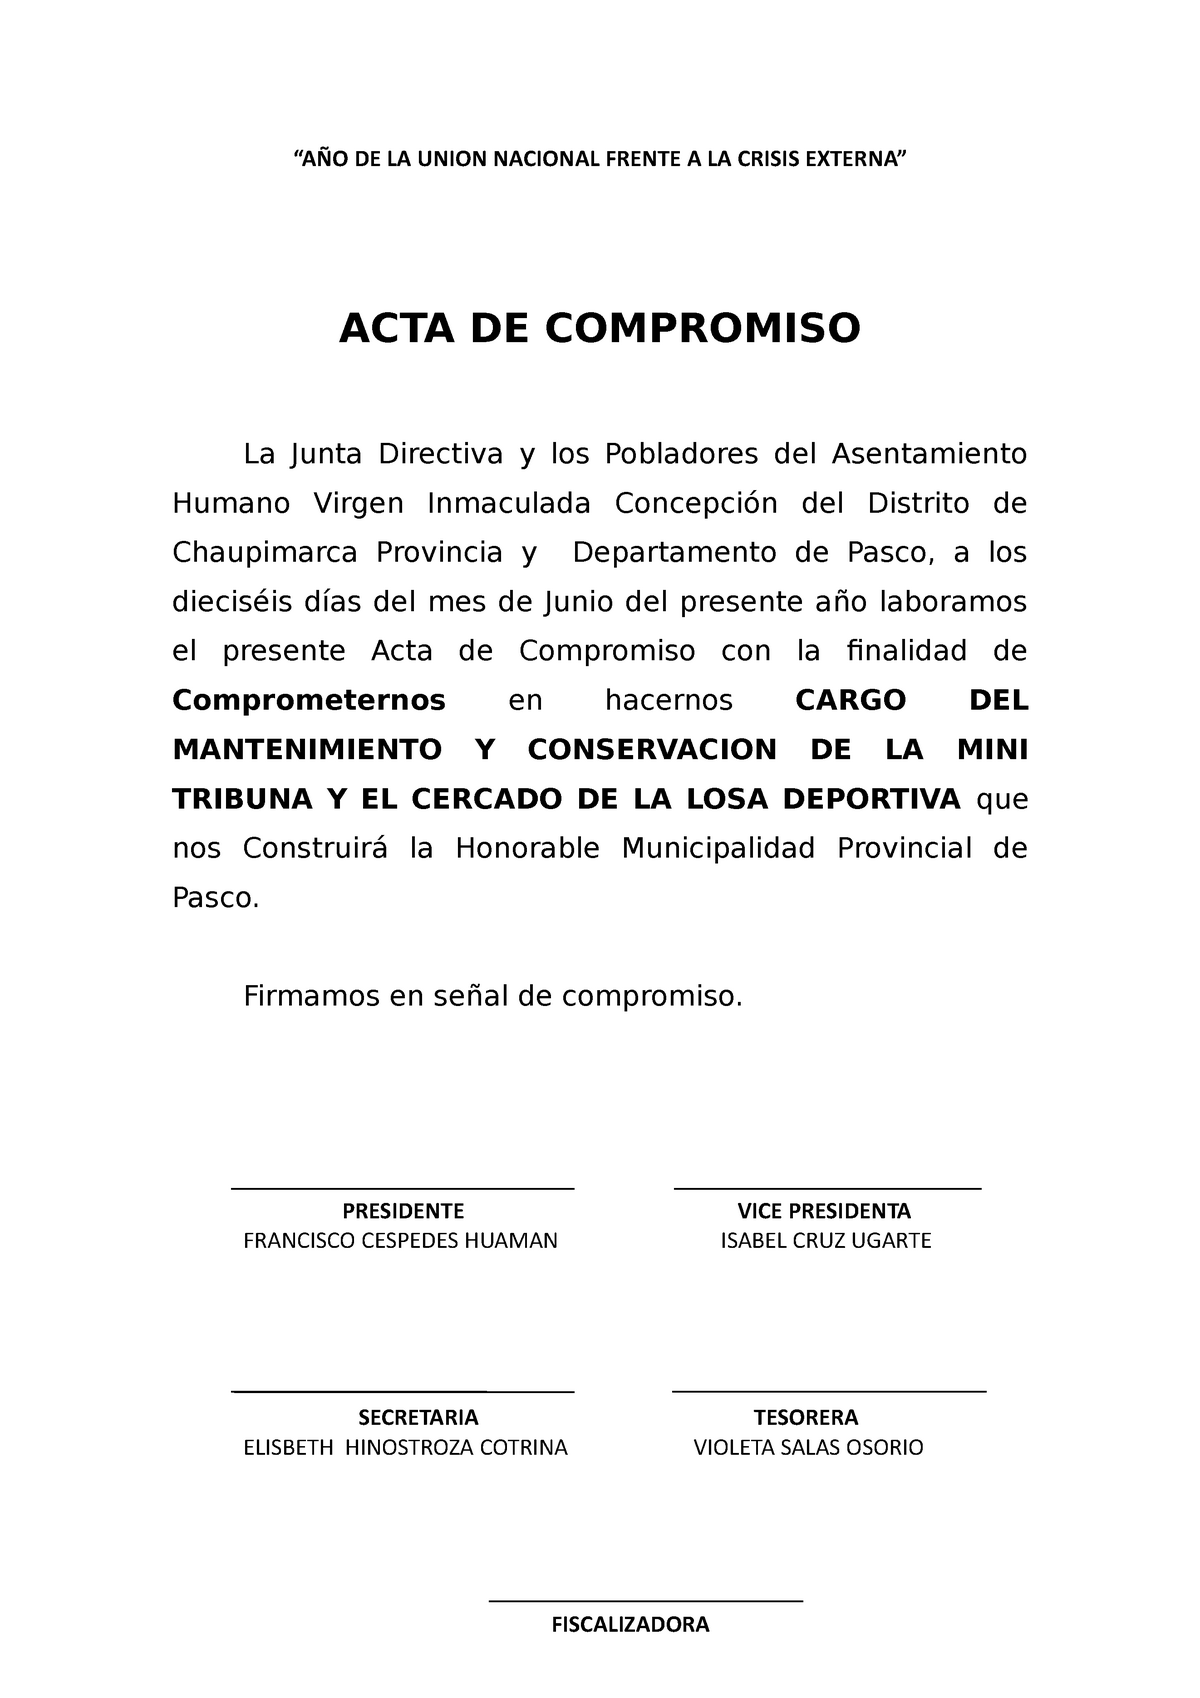 Introducir Imagen Modelo De Acta De Compromiso De Pago Abzlocal Mx My